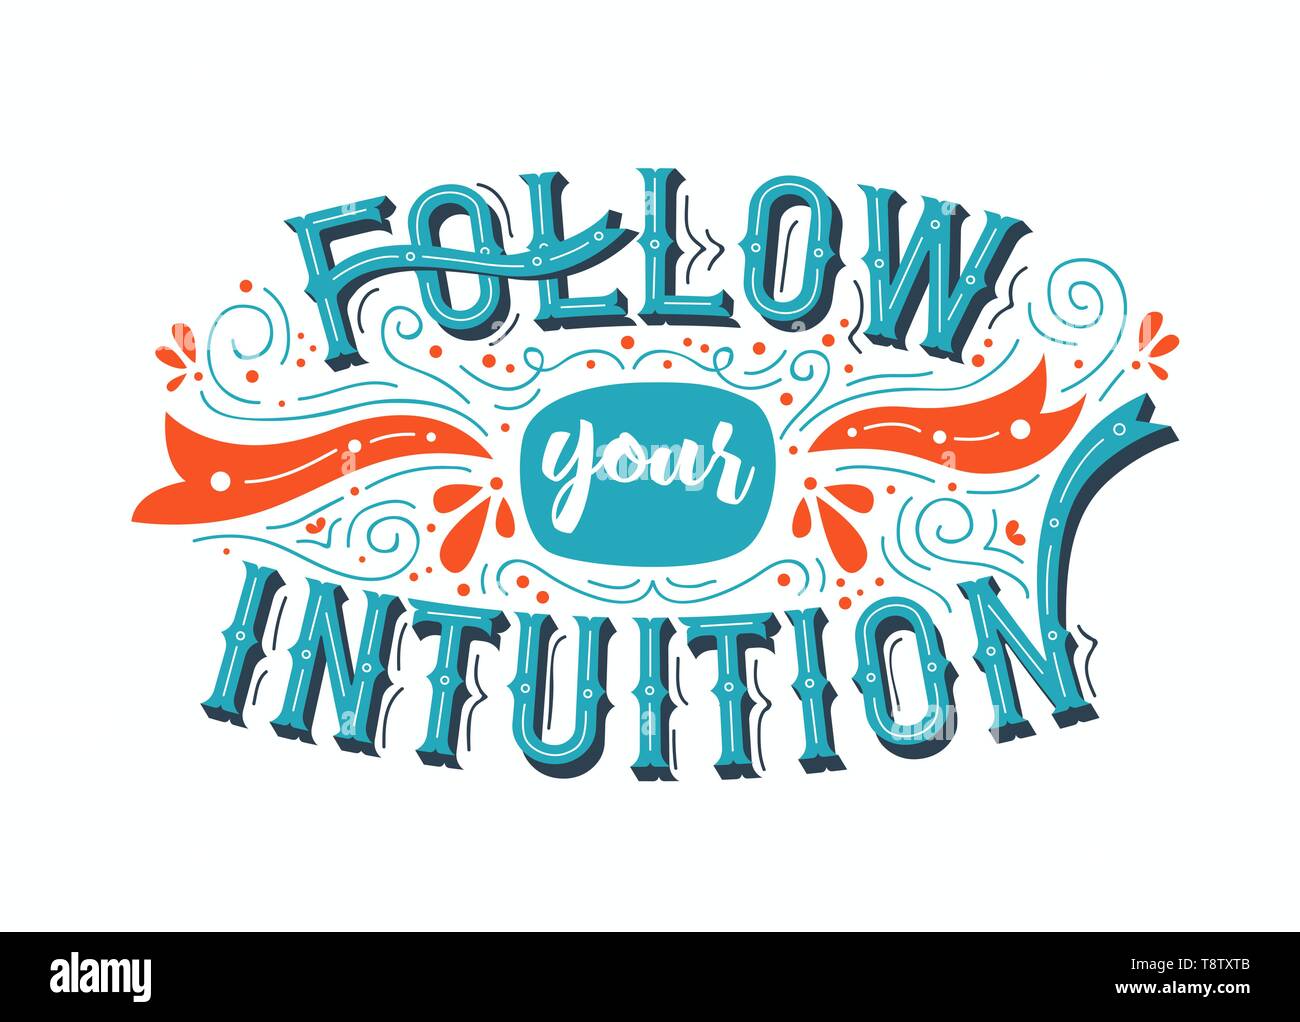 Ihre Intuition Typografie zitat Plakat für positive leben Motivation, Vertrauen und Führung folgen. Bunte inspiration Schriftzug Design Konzept. Stock Vektor